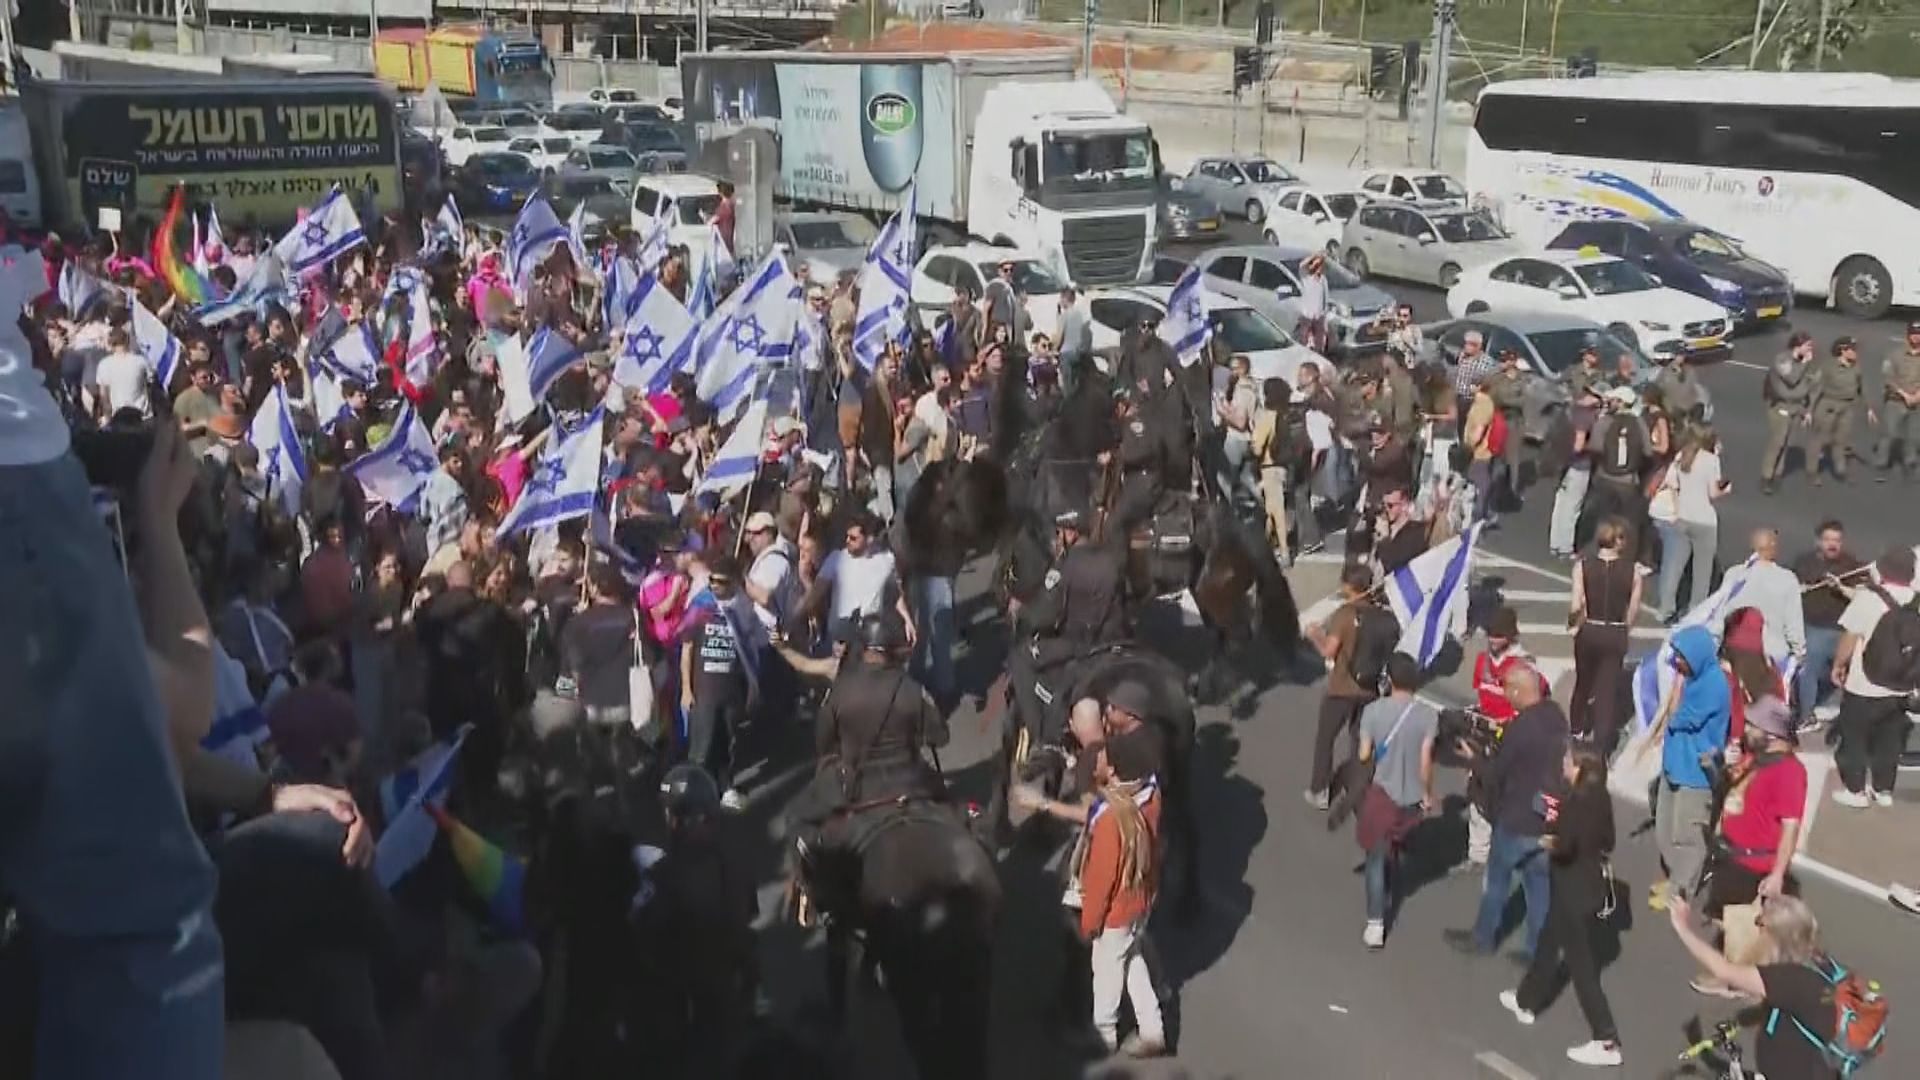 以色列示威者堵塞通往機場道路抗議司法改革